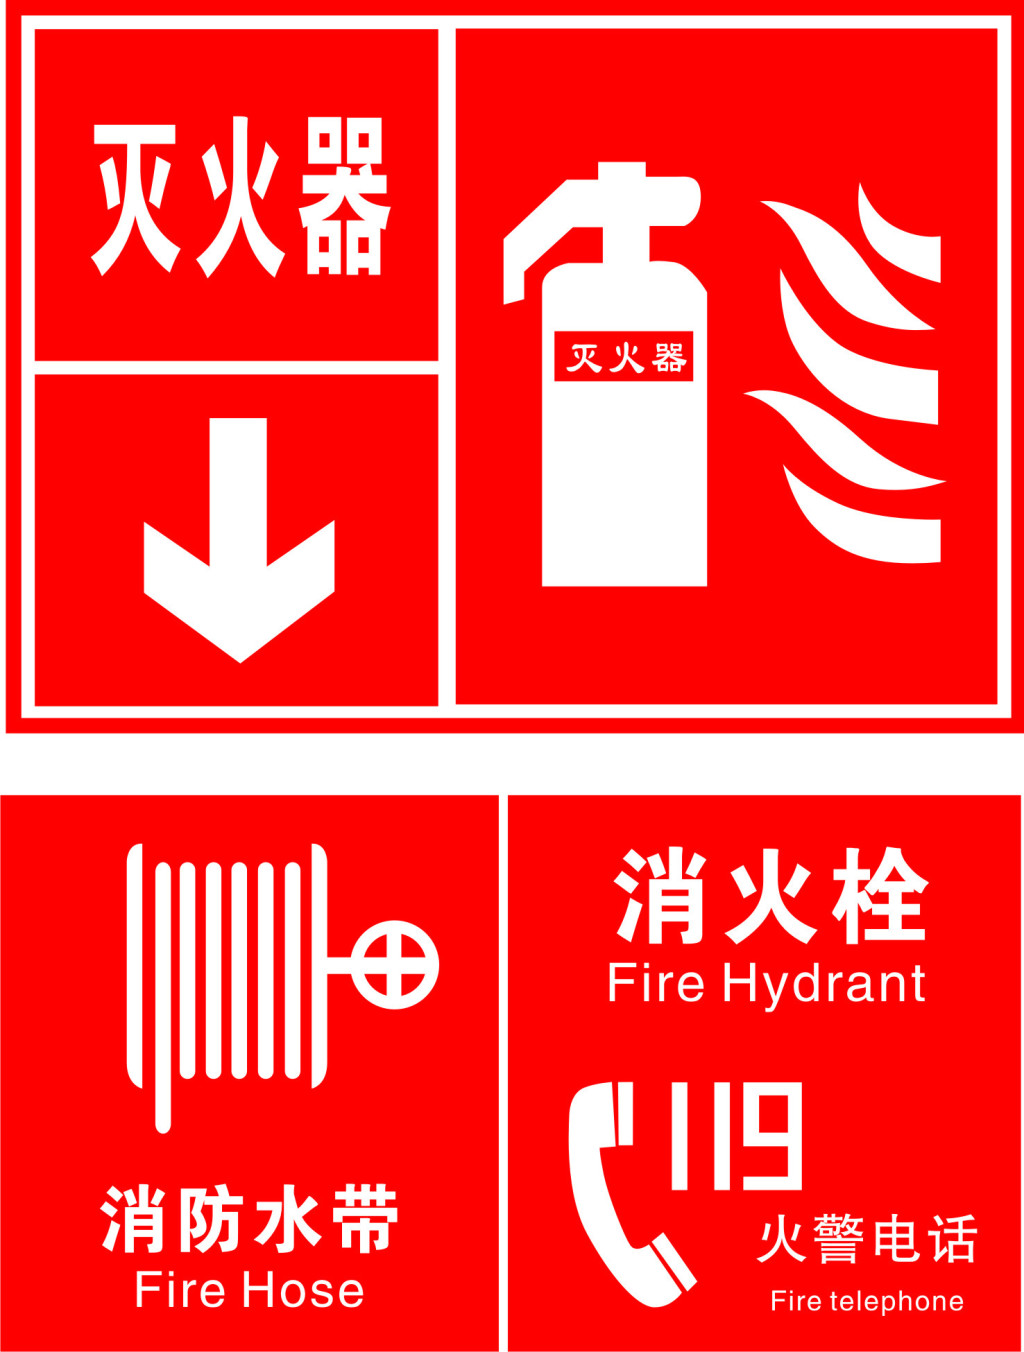 产品详情 分享到: 消防标识标牌 分享网站